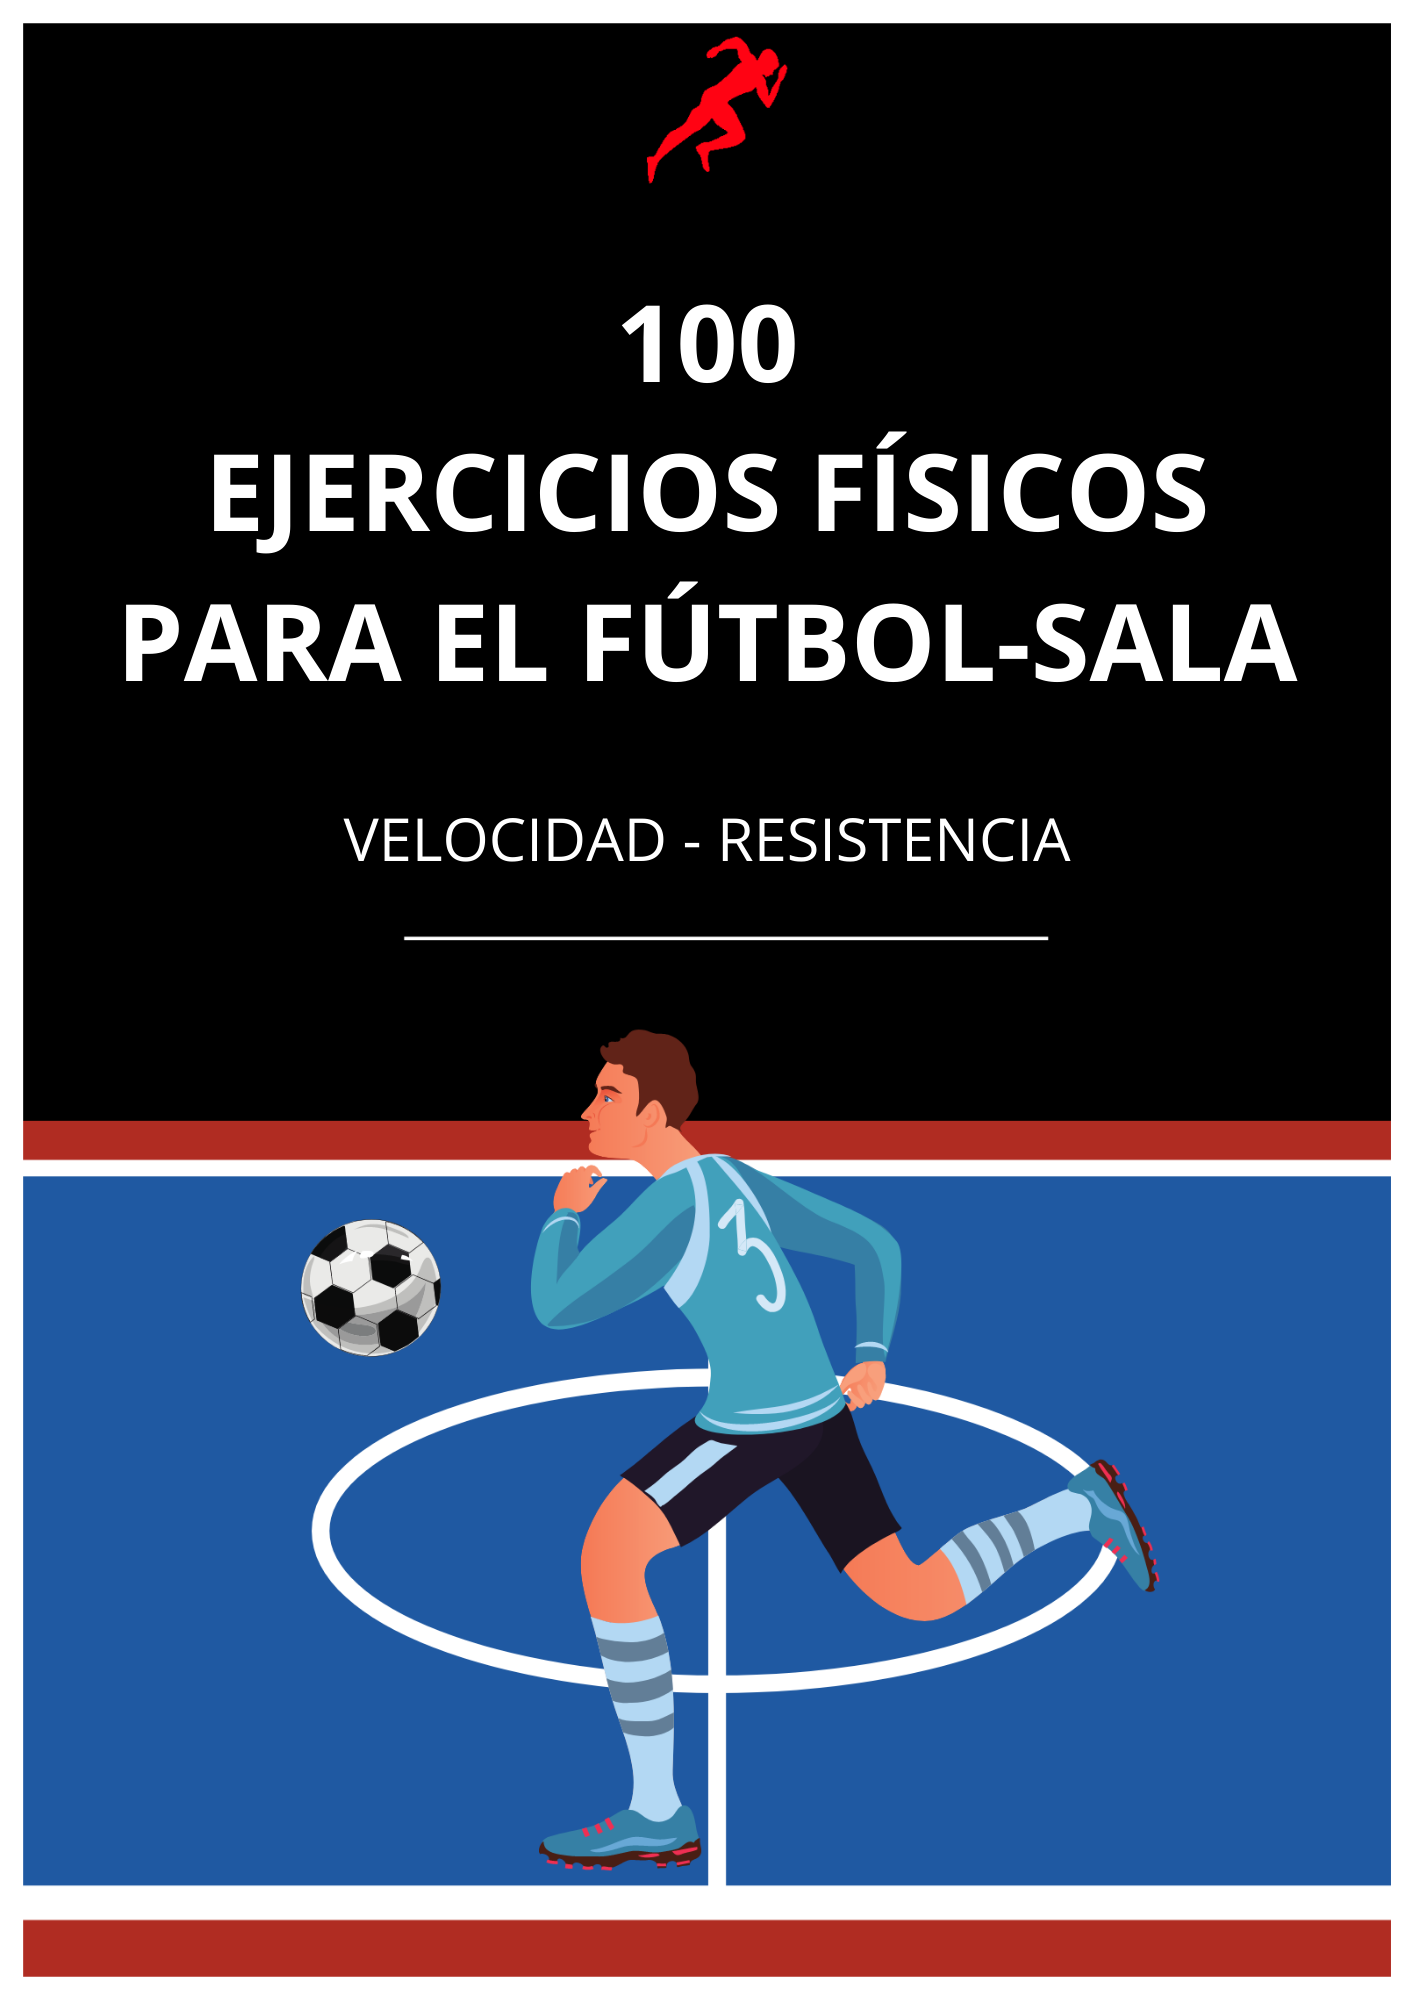 PDF 100 ejercicios físicos para fútbol sala